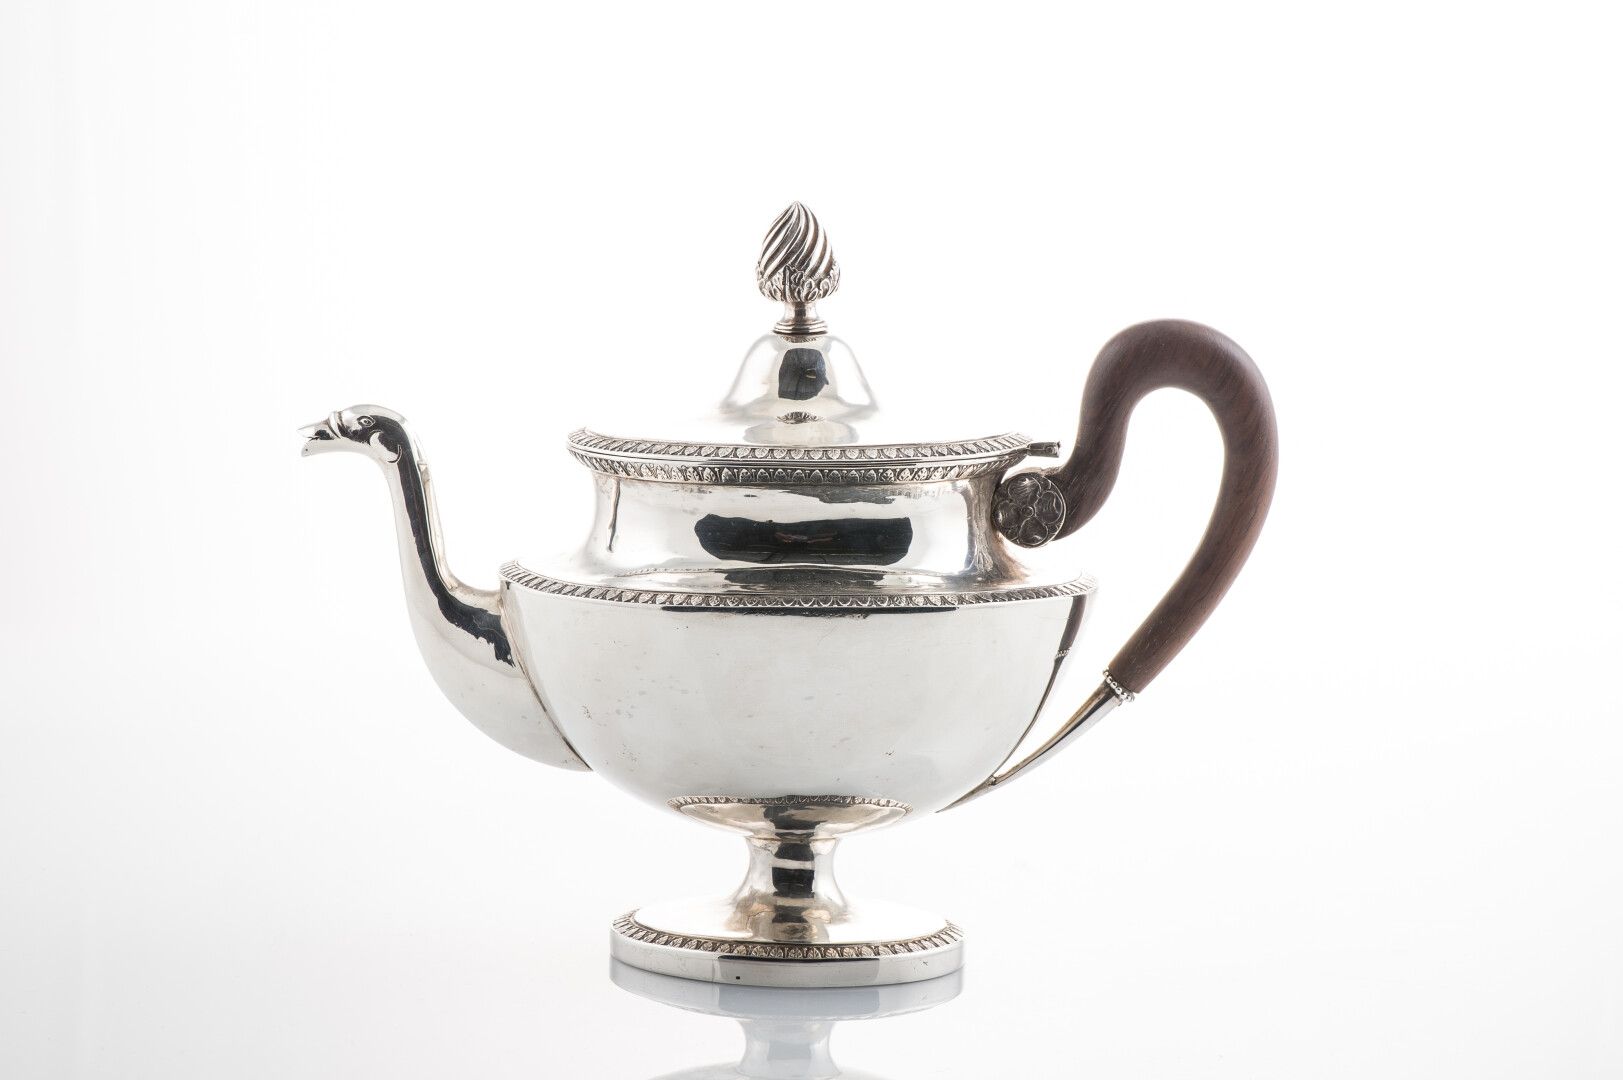 Null 银质茶壶，Charençon印记，有水叶图案，动物头的壶嘴，带有刺桐叶的扭曲网纹，木质手柄（毛重：1011克）（铰链处有意外）。